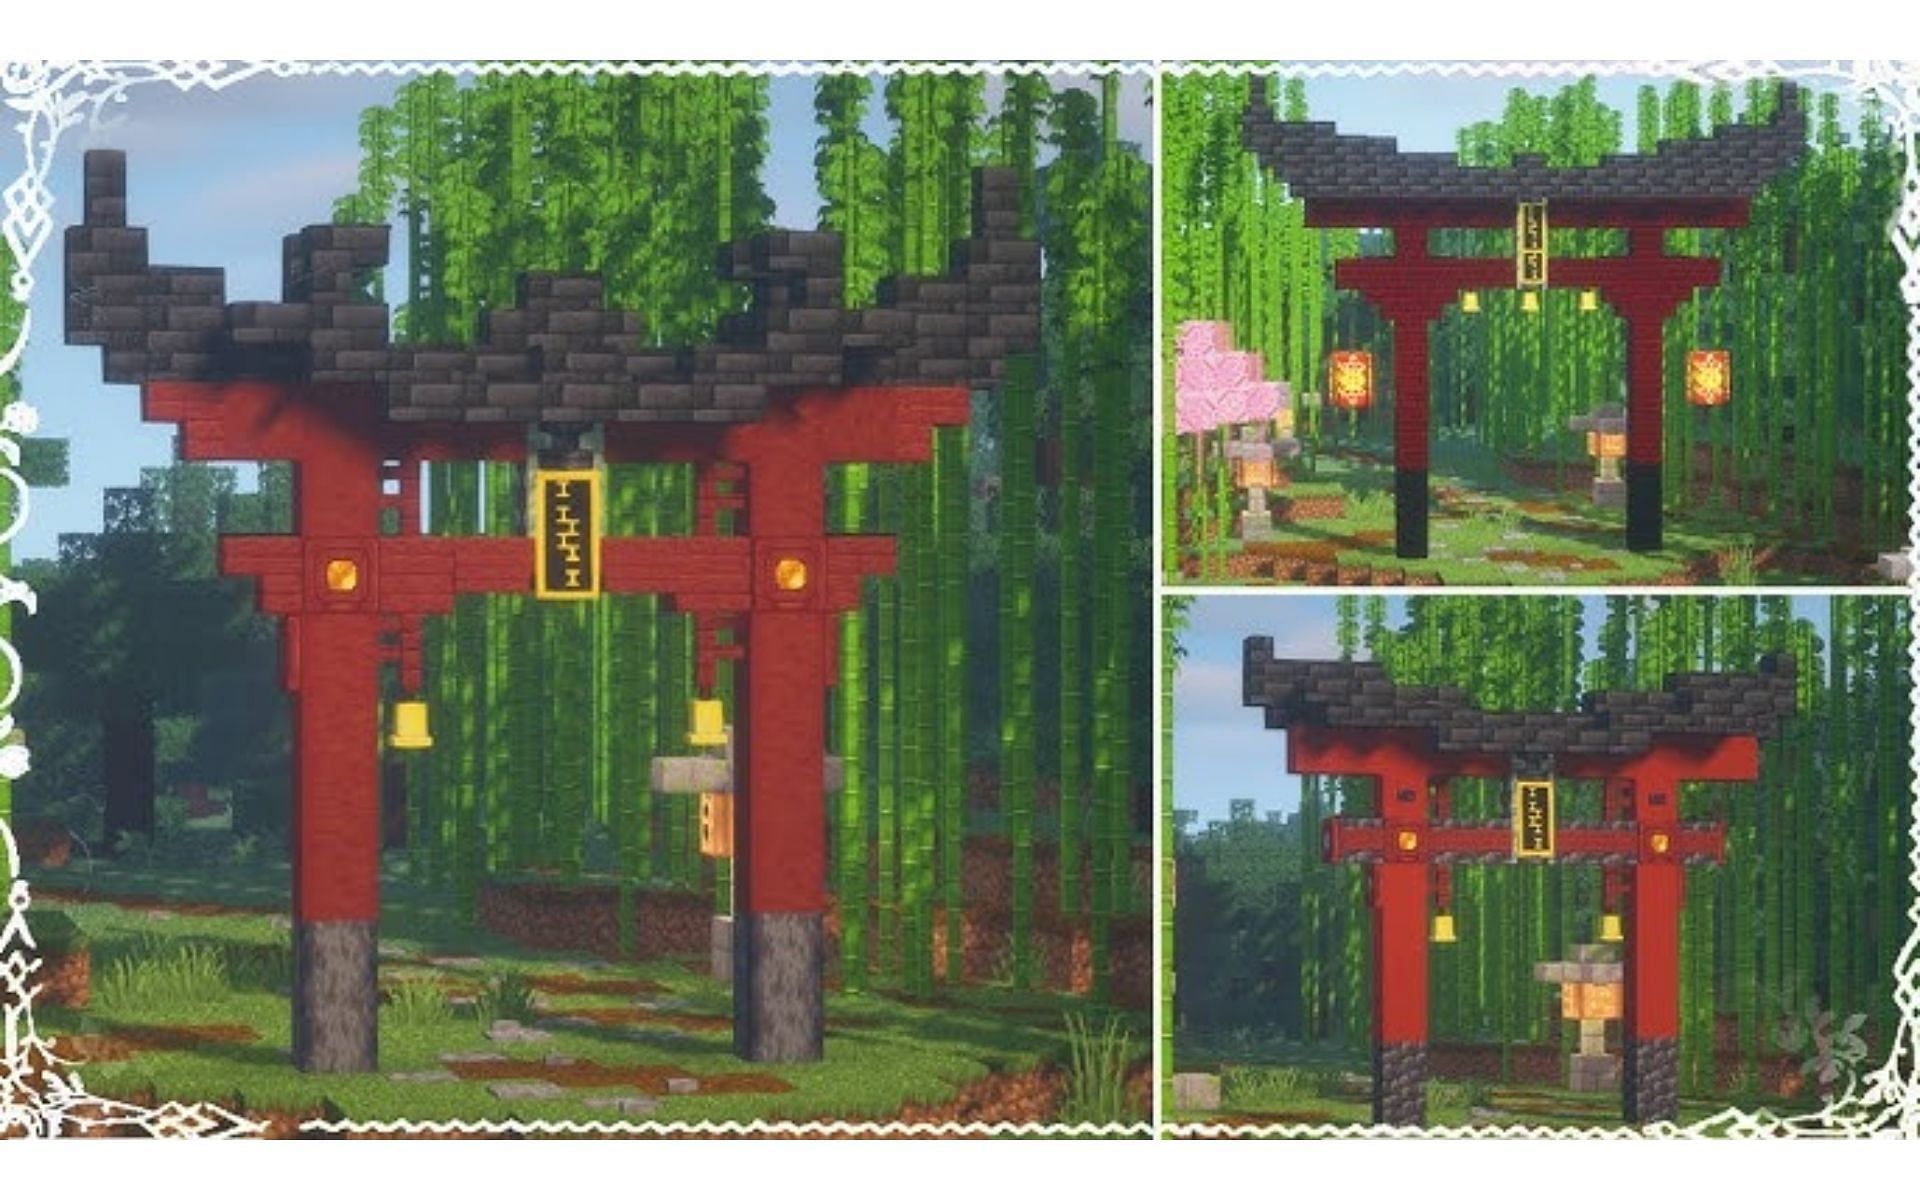 Эта традиционная арка тории является отличным дополнением к любой постройке в японском стиле (Изображение взято с YouTube/Goldrobin)